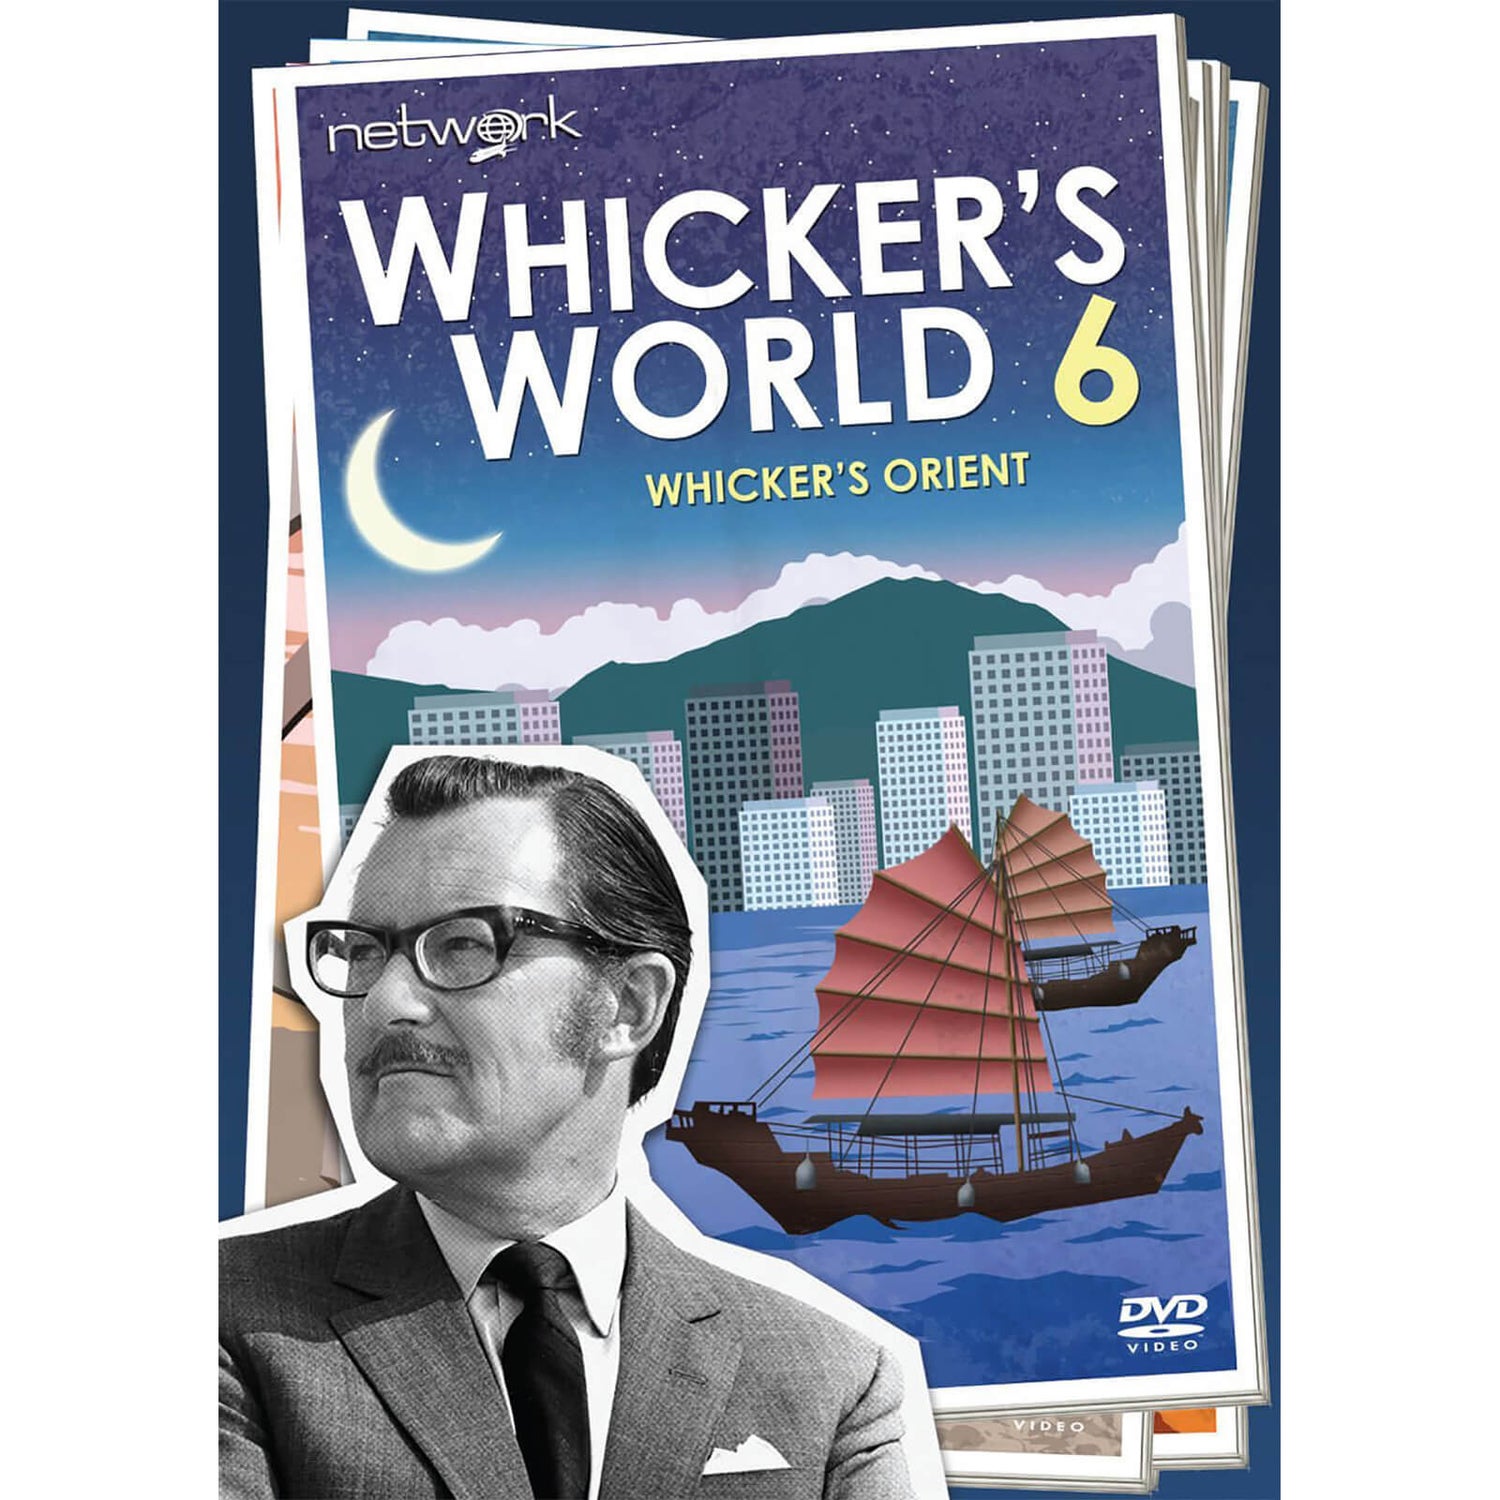 Whicker's World 6: Whicker's Orient